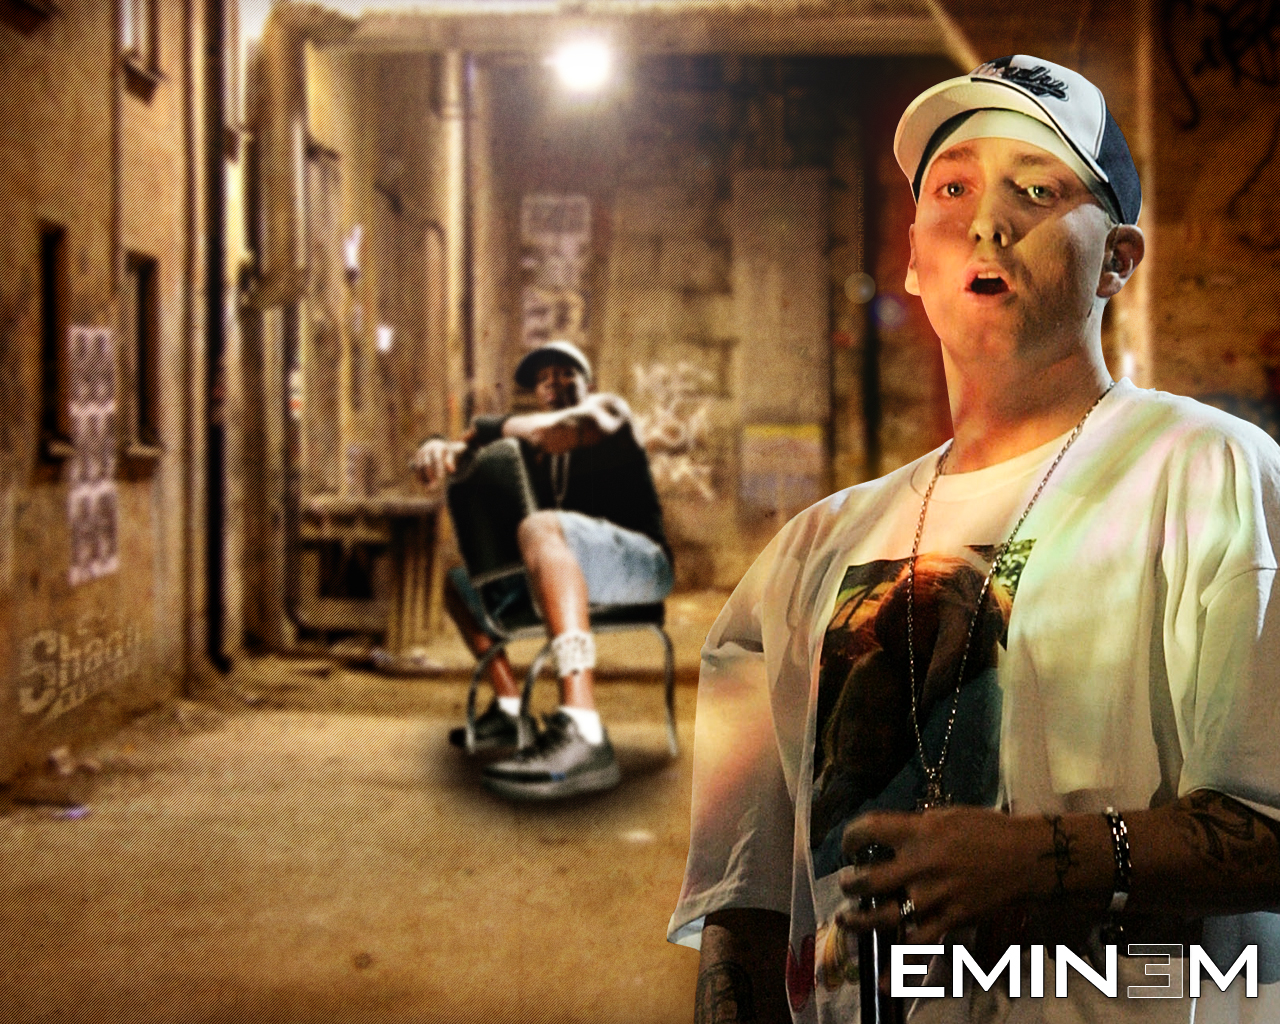 http://3.bp.blogspot.com/-tGbJ-Ug_evE/UFtOiUjbFEI/AAAAAAAAETU/Mj43rbKGHCE/s1600/Eminem_Wallpaper_2_by_SlayerPaTjE.jpg